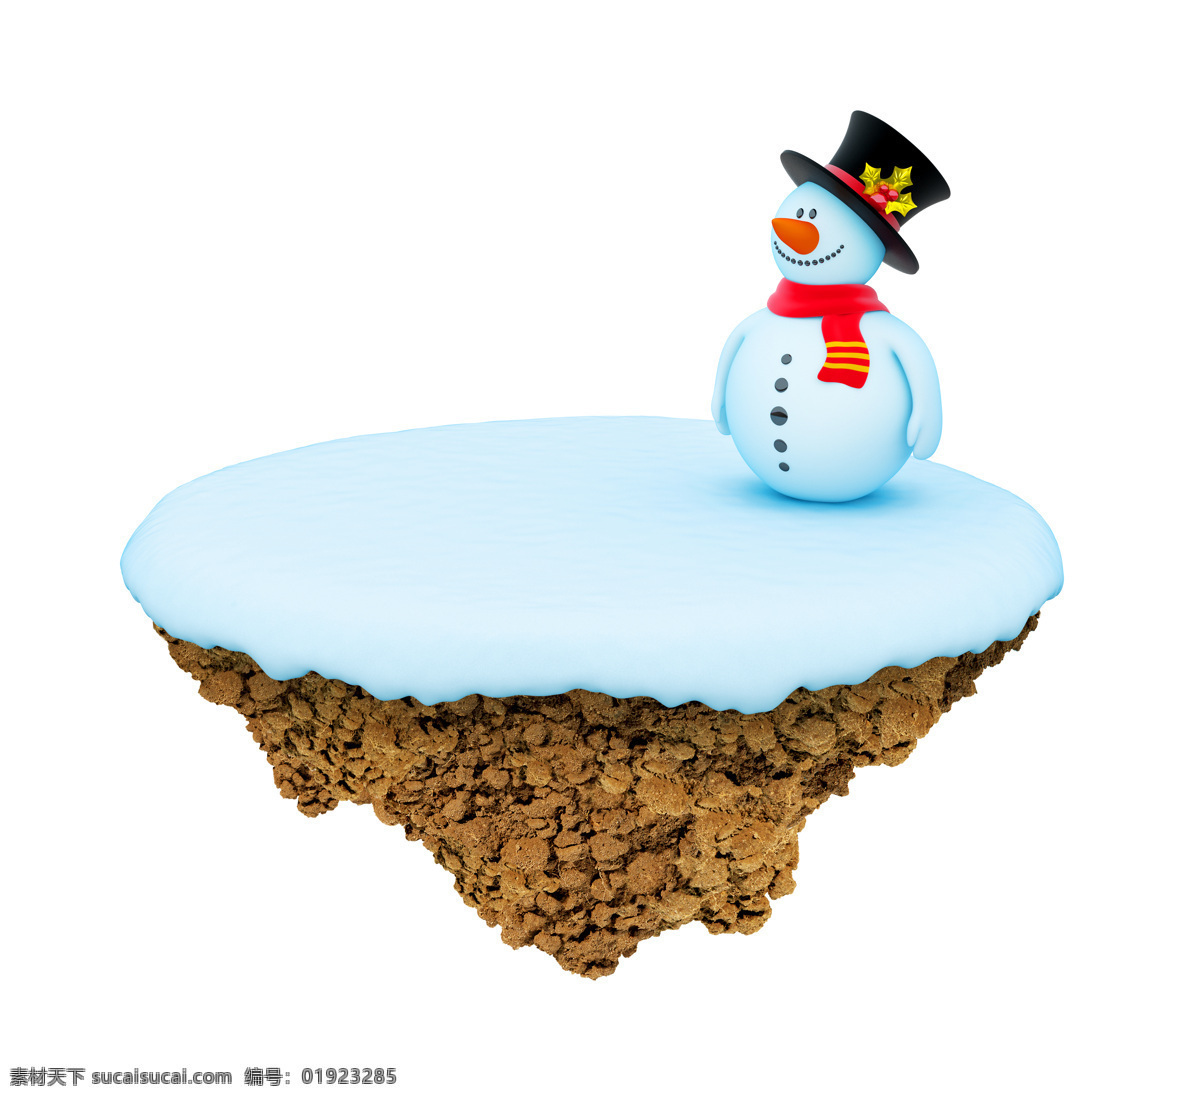 小岛 上 雪人 雪人摄影 雪人素材 雪地 雪景 圣诞节 悬浮岛 创意图片 抽象 艺术 其他类别 环境家居